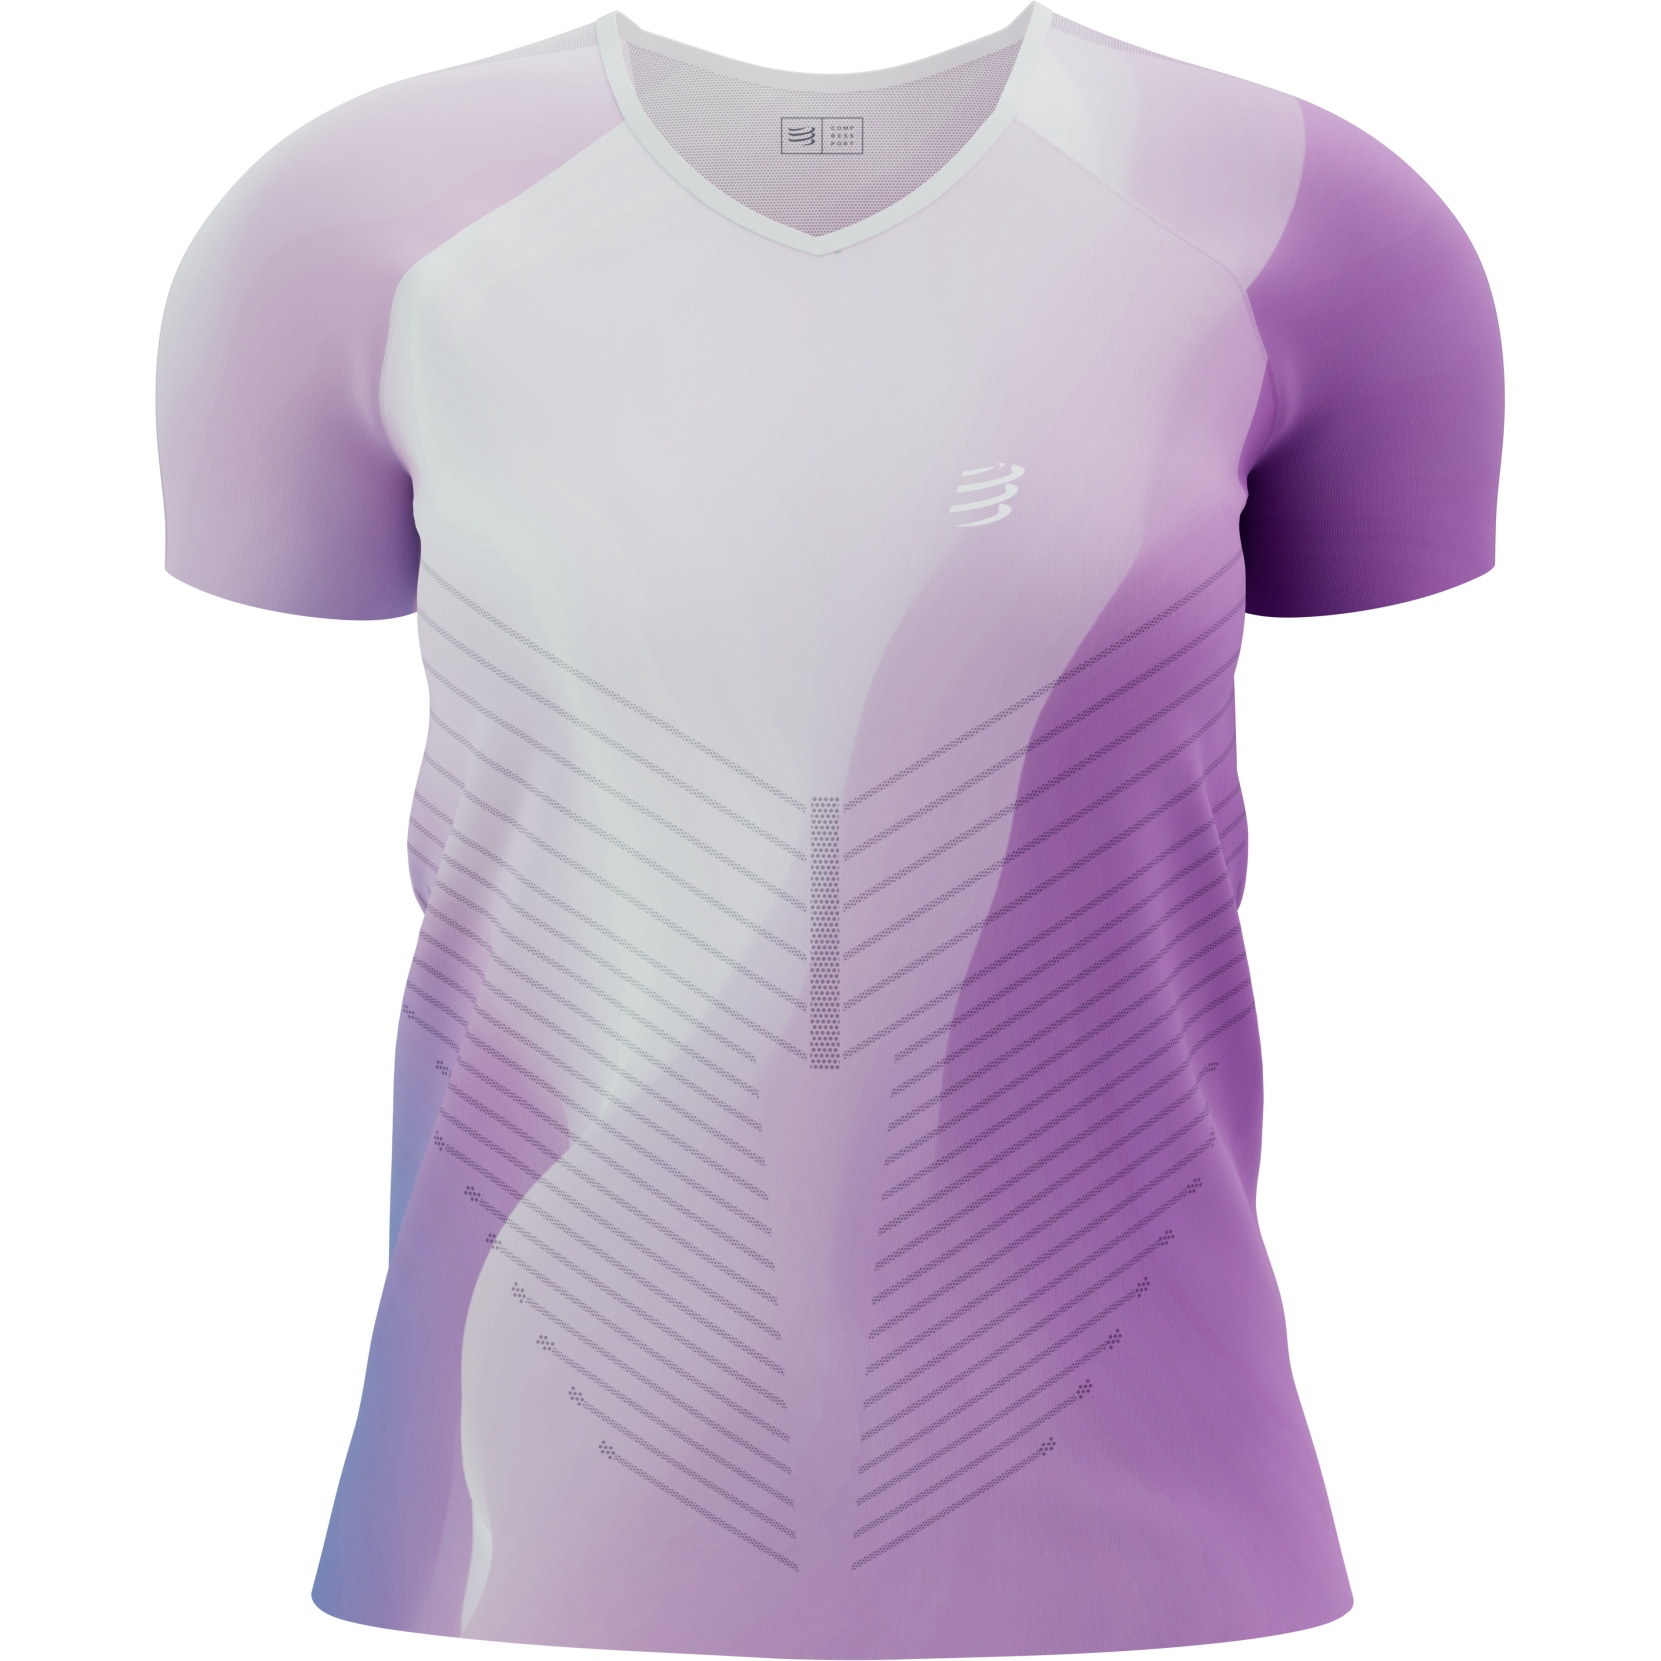 Produktbild von Compressport Performance T-Shirt Damen - royal lilac/lupine/white